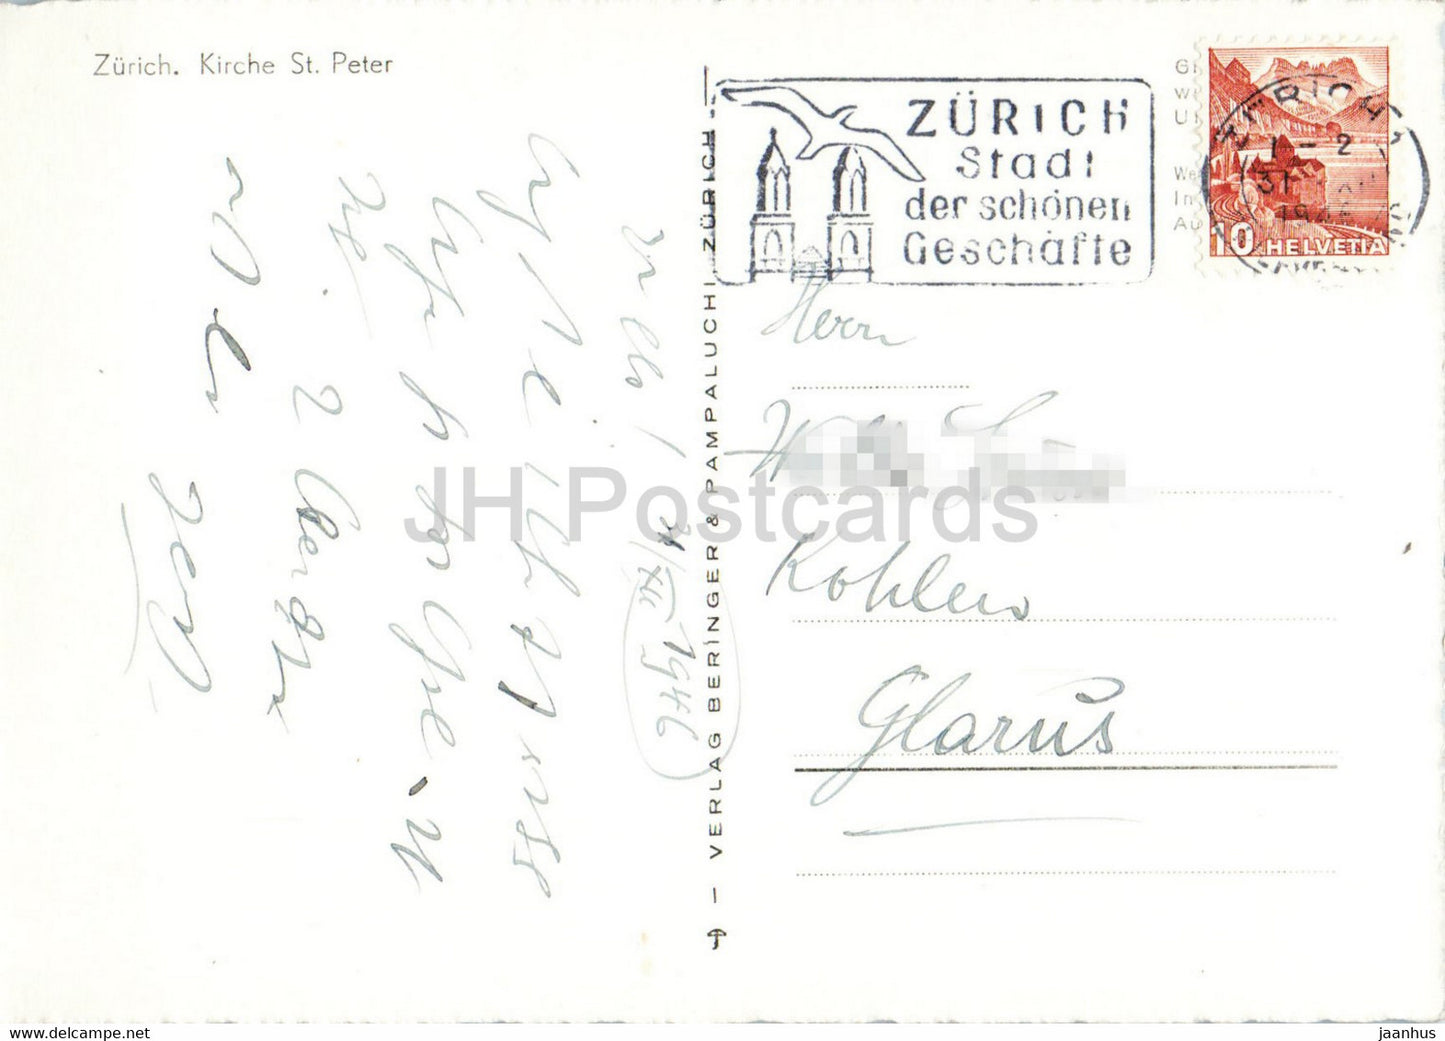 Zürich - Kirche St. Peter - Kirche - Herzliche Neujahrswünsche - 1946 - alte Postkarte - Schweiz - gebraucht